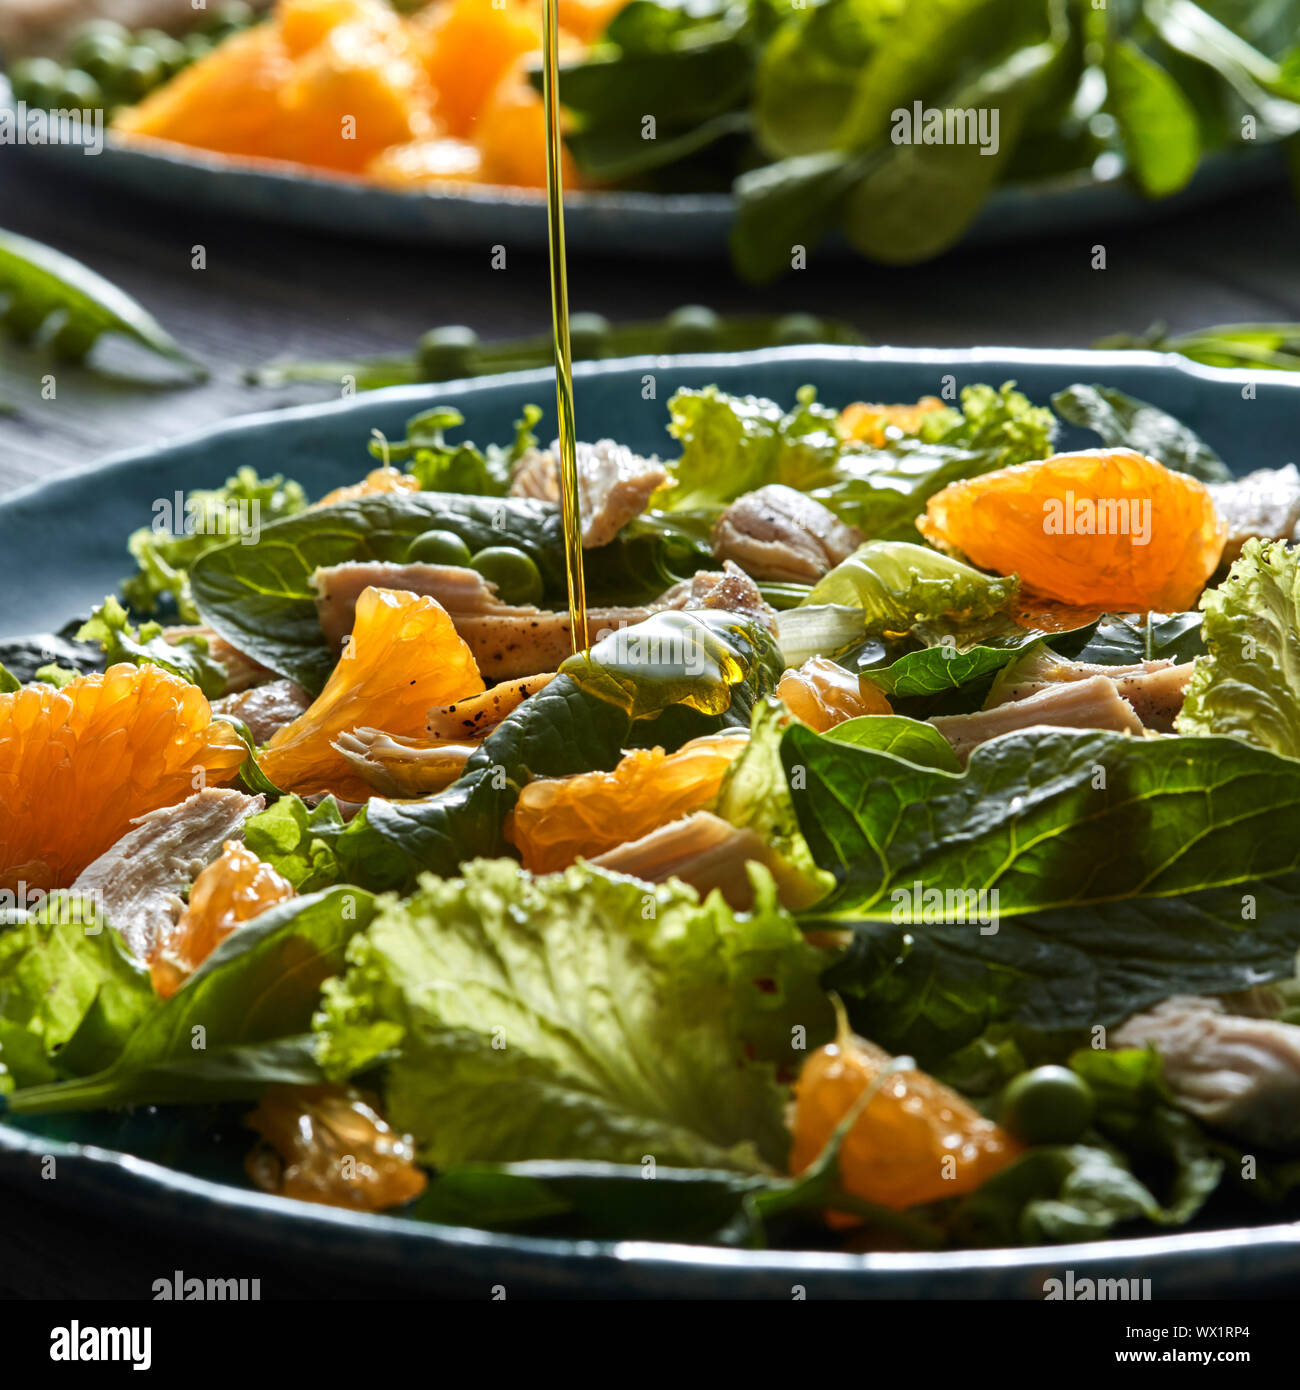 Un filet d'huile d'olive se déverse dans la salade préparée avec des légumes verts, morceaux de poulet, les tranches d'orange dans un bleu ceram Banque D'Images